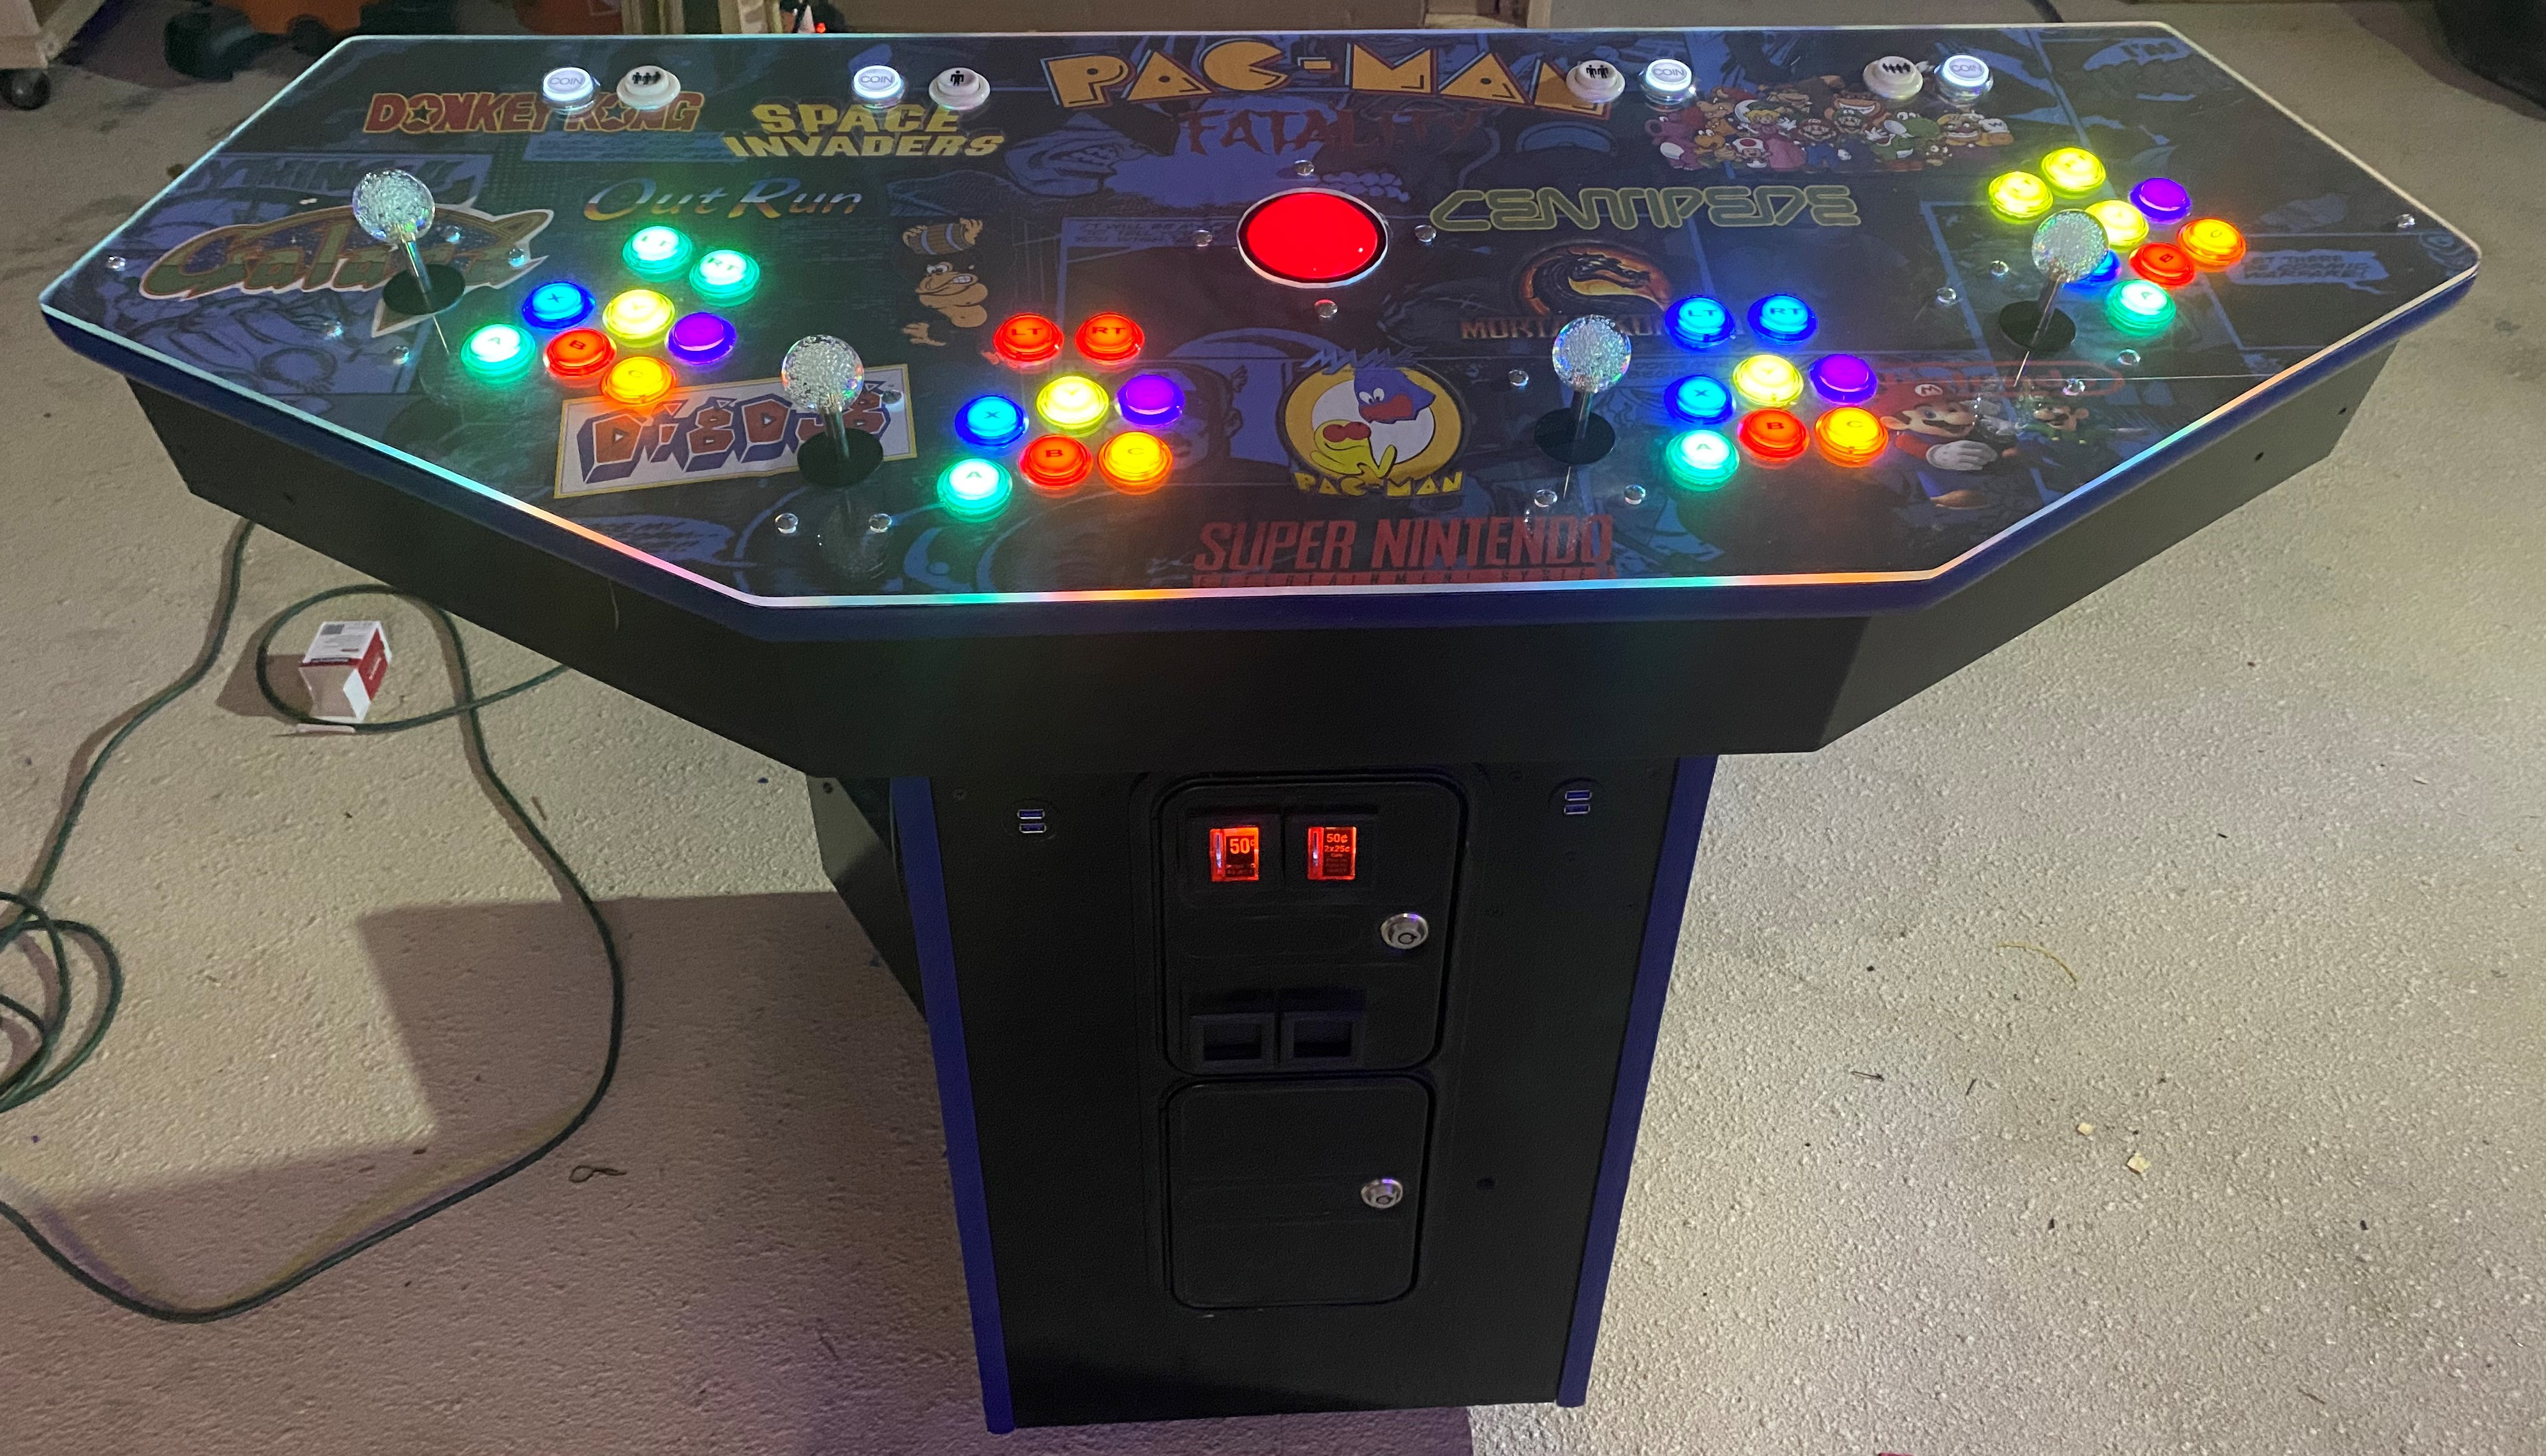 hacked arcade games